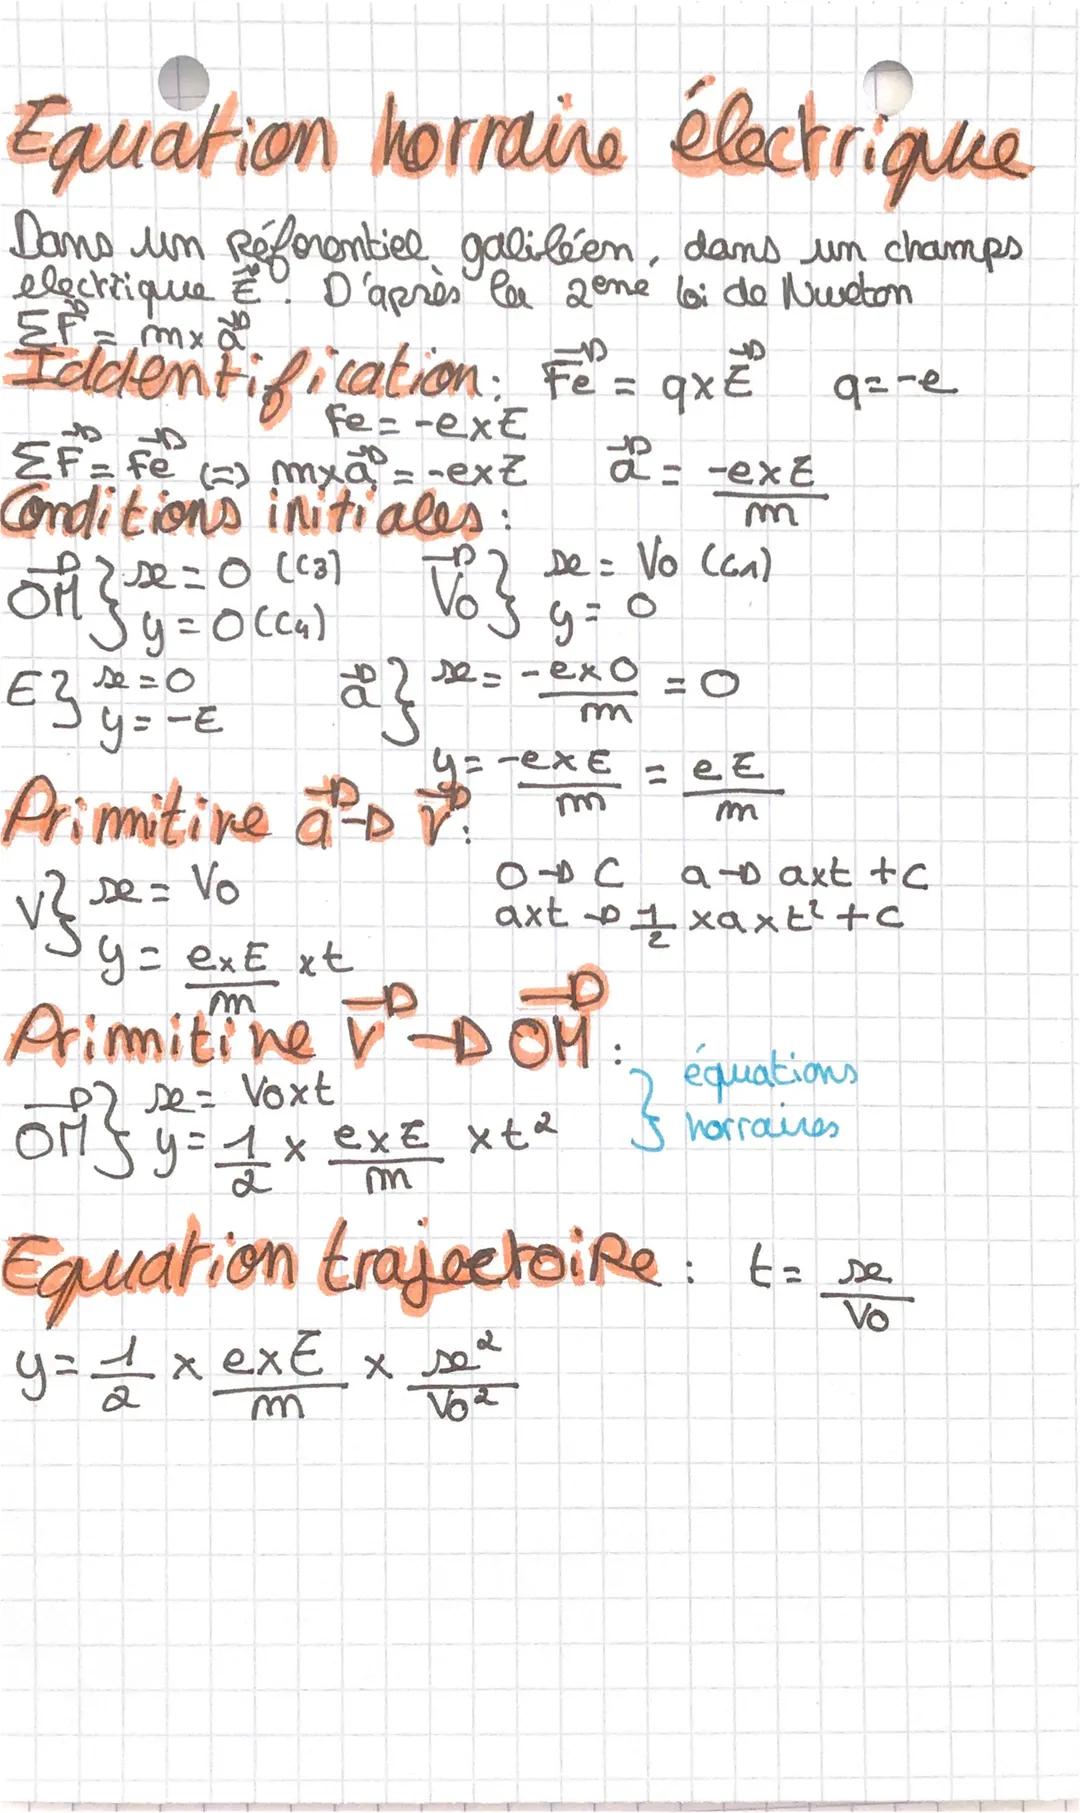 Equation horraine pesenteur
Dans un Referentiel Galifen, d'après le 2ome
bi de Nureton EF = mxd. Dans un champs
de pesenheur uniforme go, la